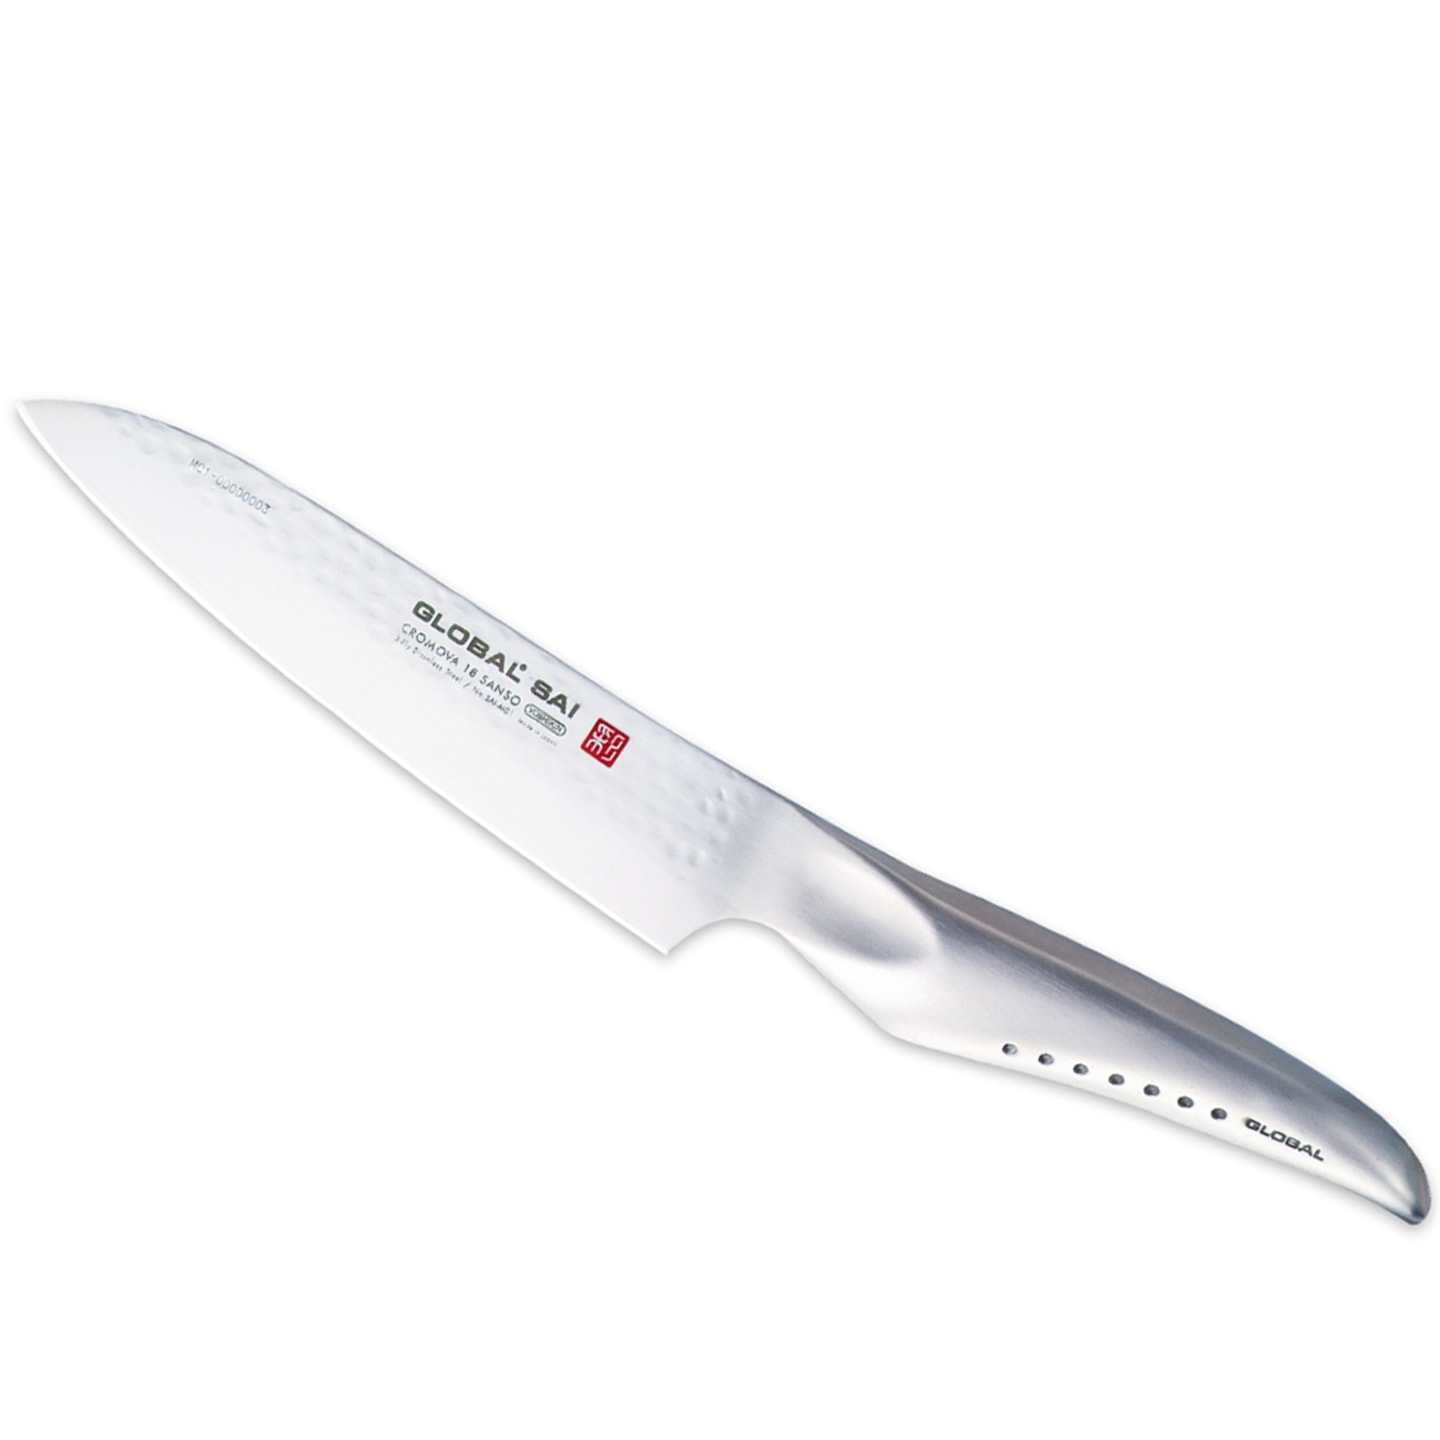 Global Sai kockkniv SAI-M01, 13,5 cm (1 av 2)